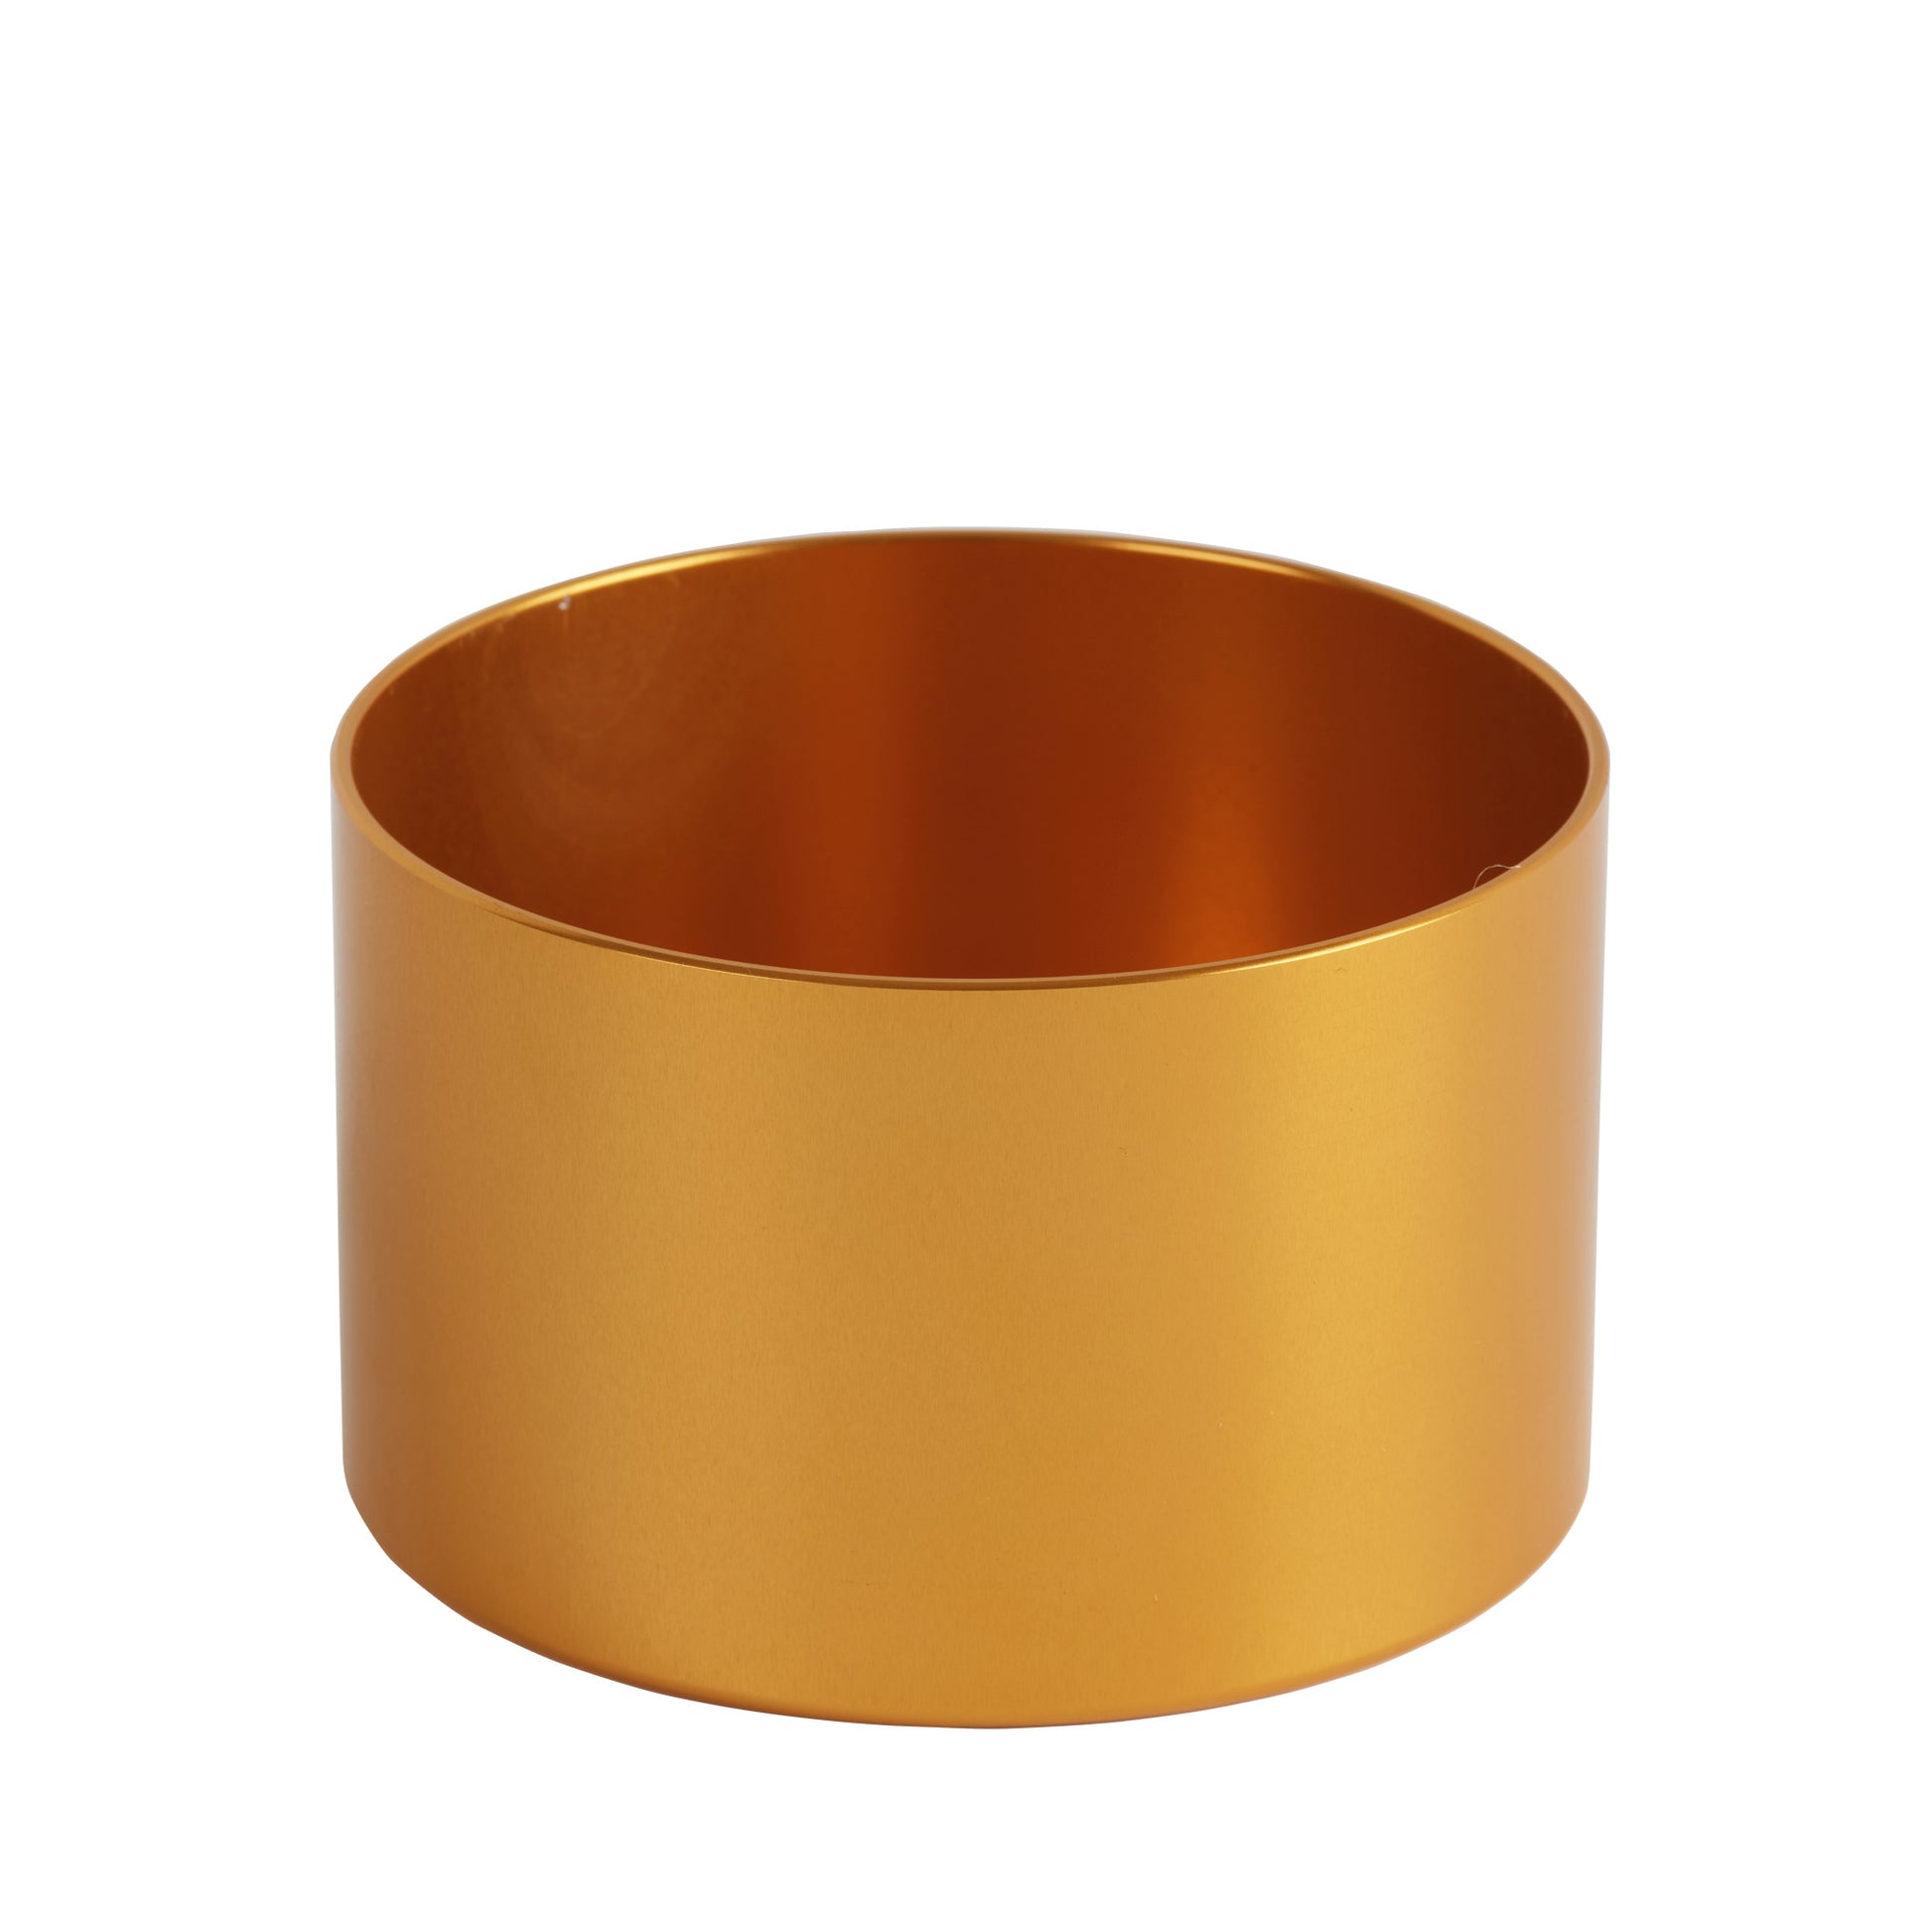 https://bondimagnets.com/cdn/shop/files/fishing-magnet-cover-the-bondi-gold.jpg?v=1698760326&width=1946